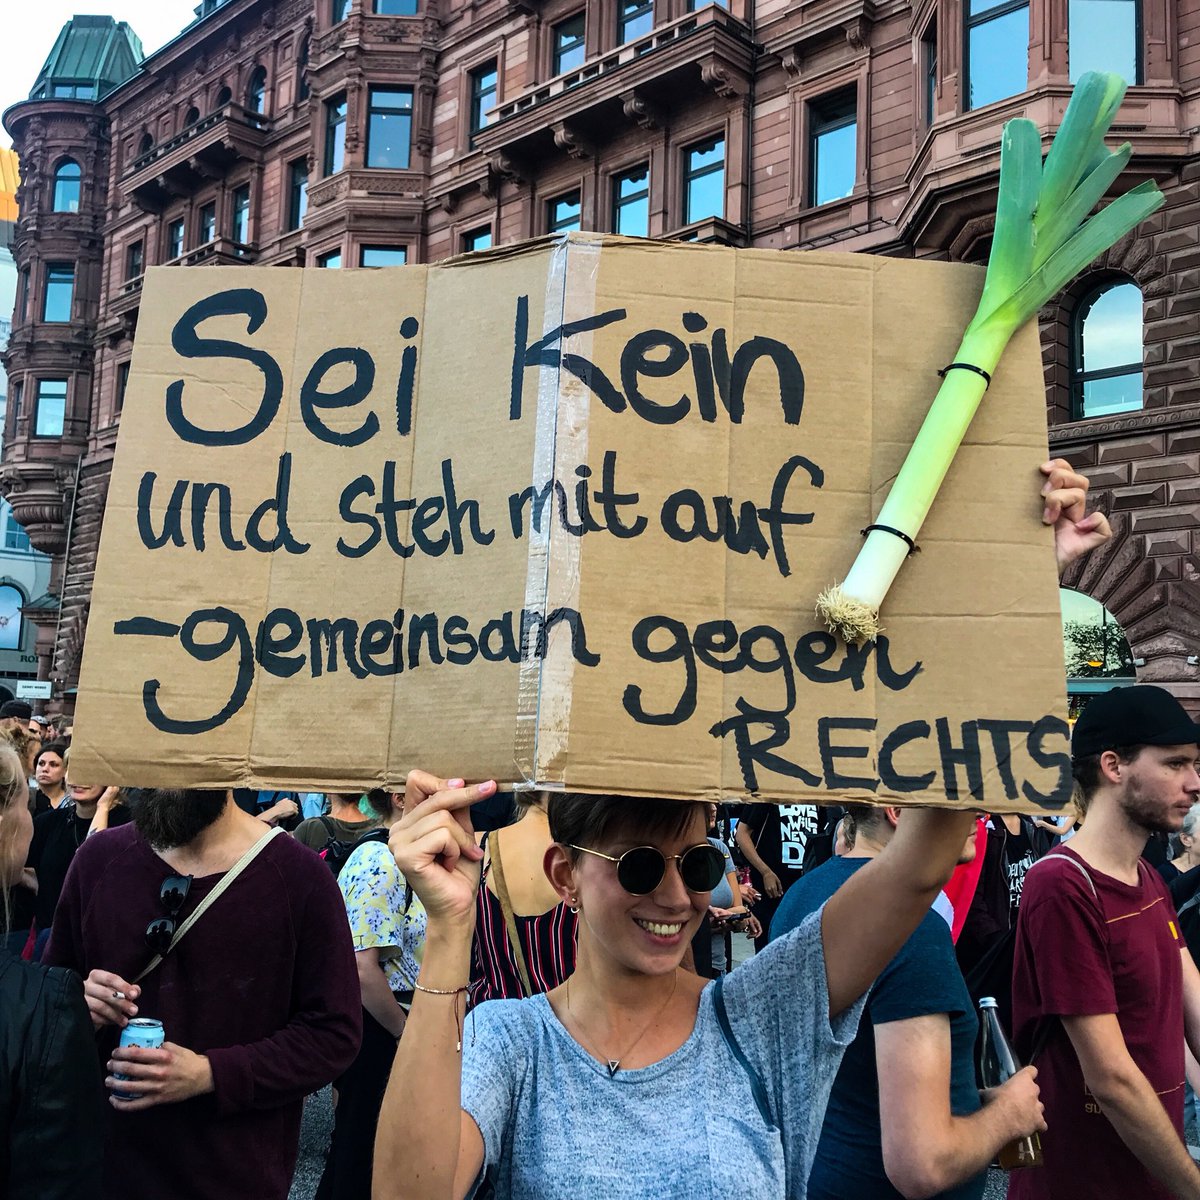 Kreative Vollblut-Demonstrantin. 
#WirSindMehr #GegenRechteHetze #Hamburg